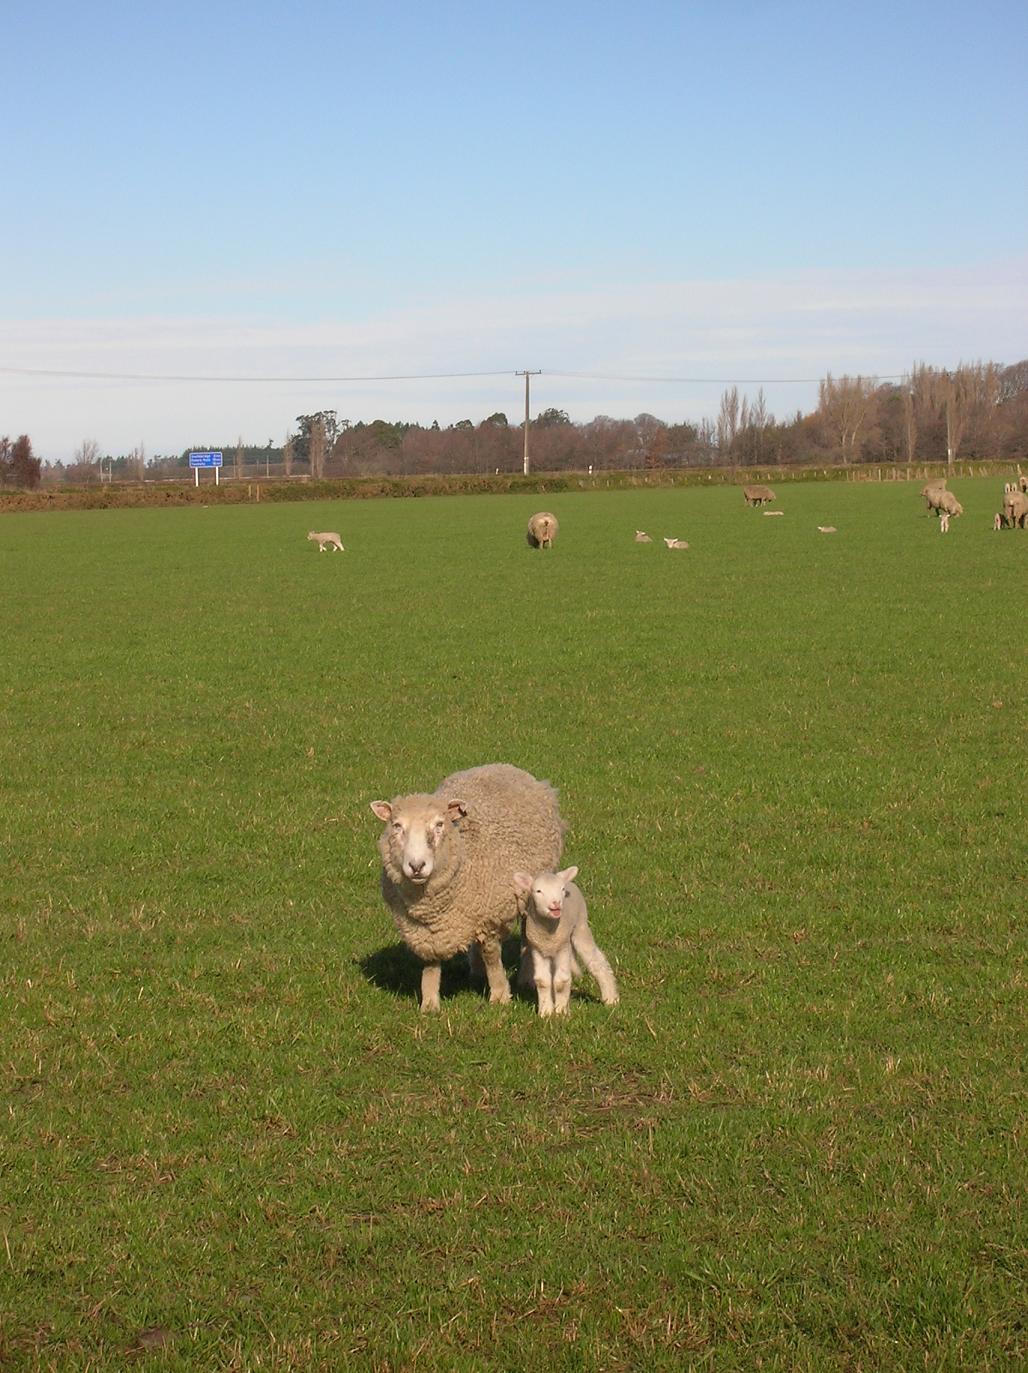 Von links nach rechts: Schaf (groß), Schaf (klein)